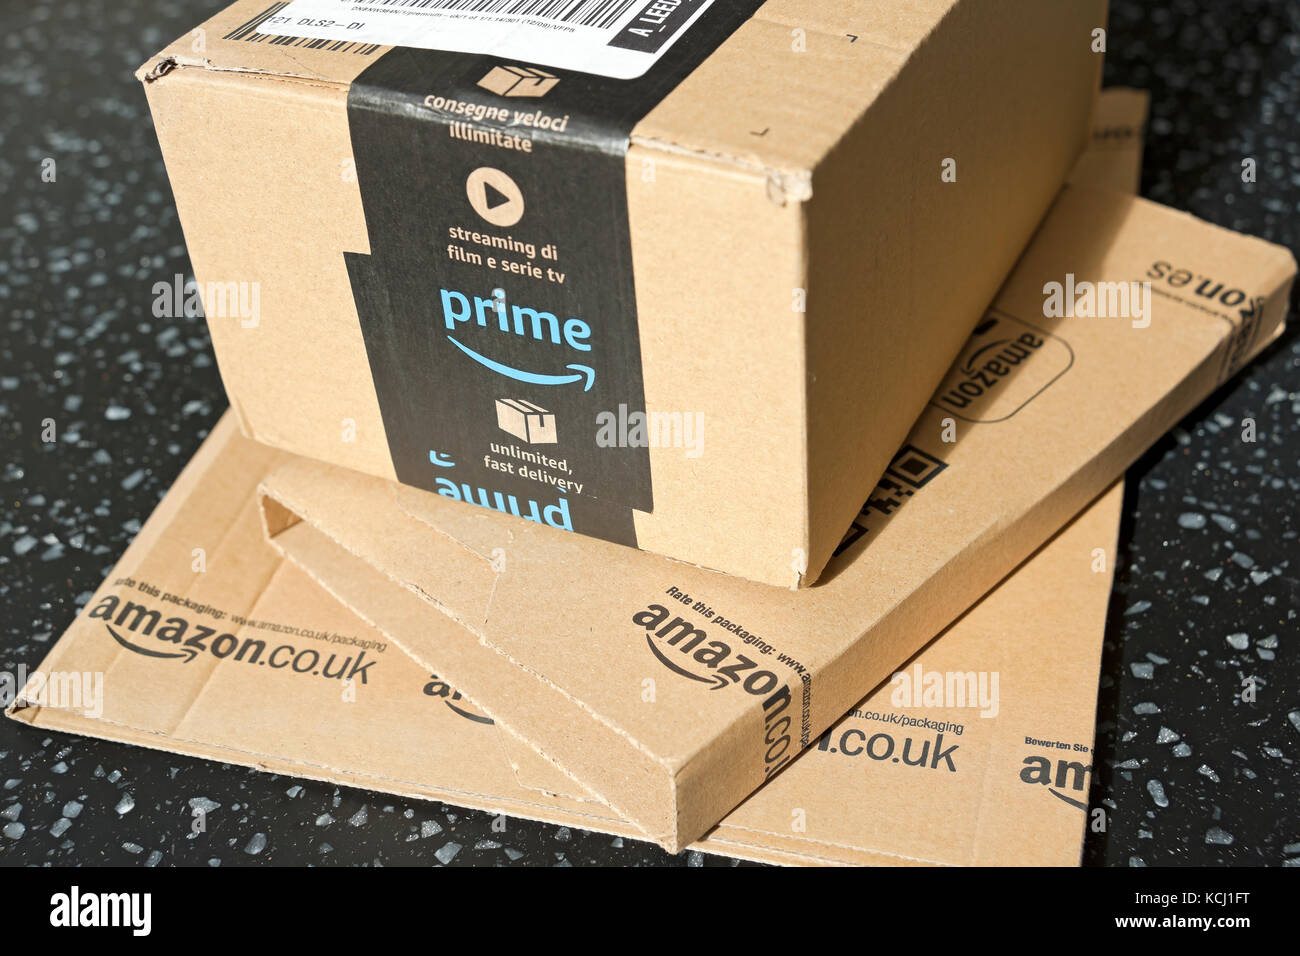 Nahaufnahme von Amazon Prime Paket Pakete Box Internet nach Hause  Einkaufsversand England UK Vereinigtes Königreich GB Großbritannien  Stockfotografie - Alamy